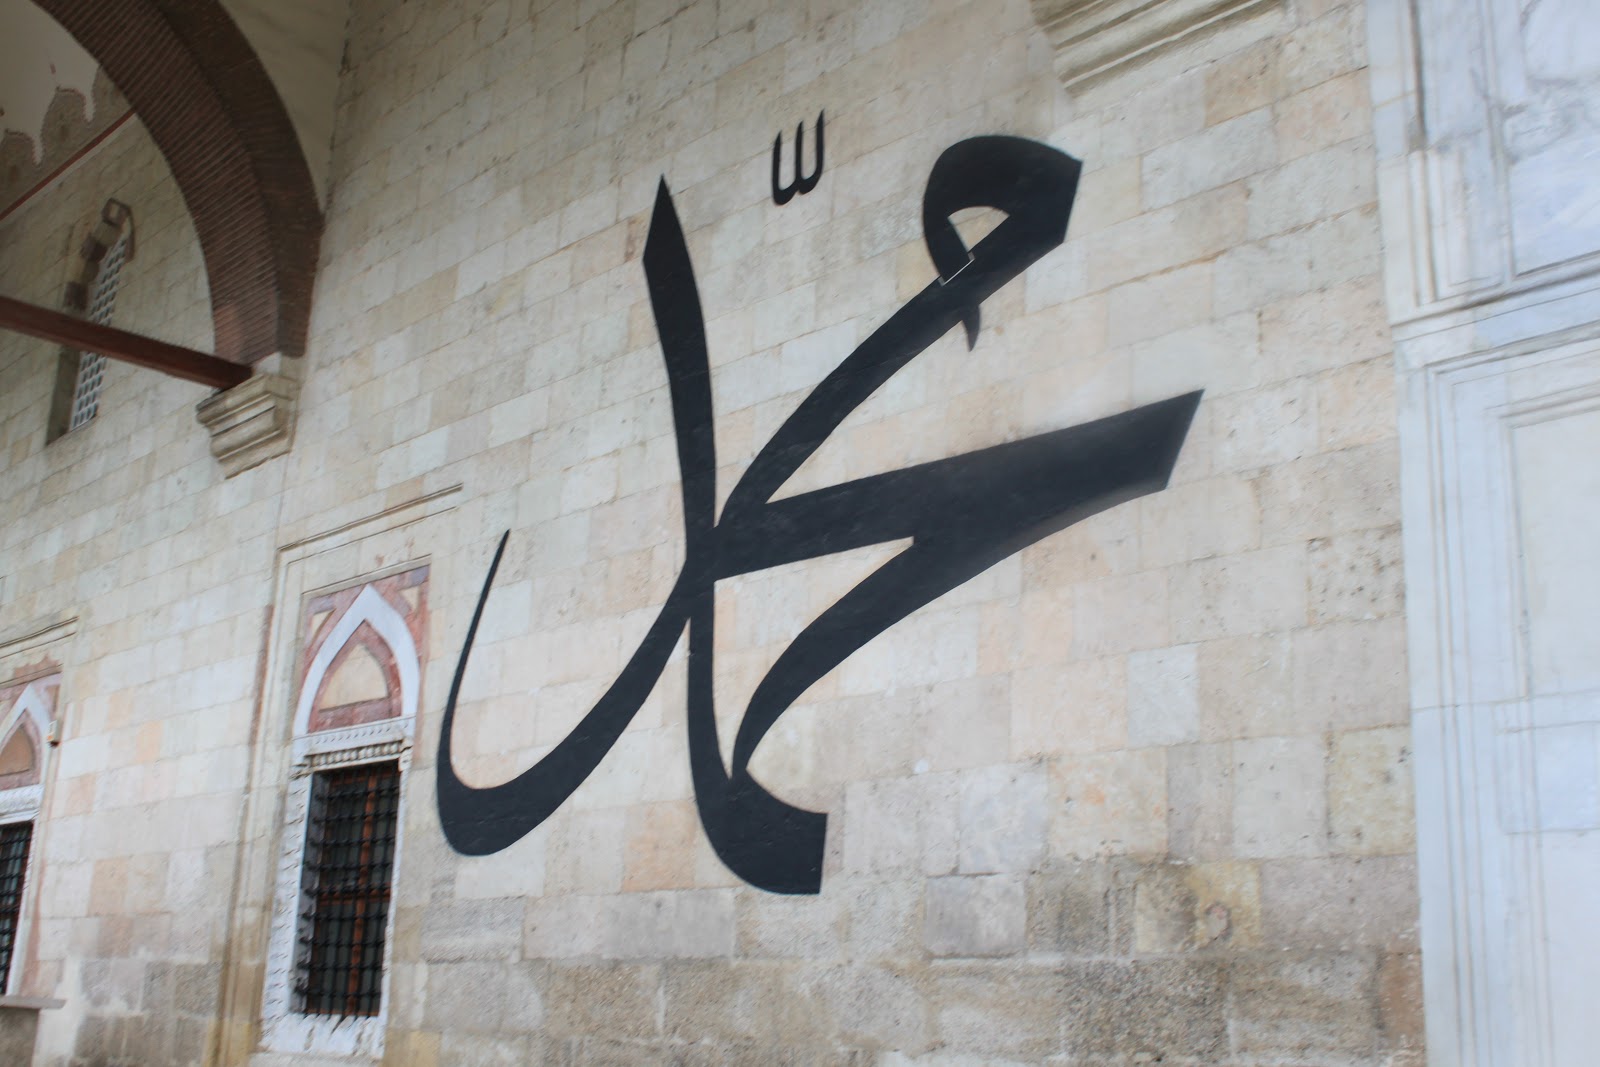 اسم محمد من الأسماء الشائعة للذكور في تركيا، لكن لماذا يلفظ “مهمت” وليس محمد؟